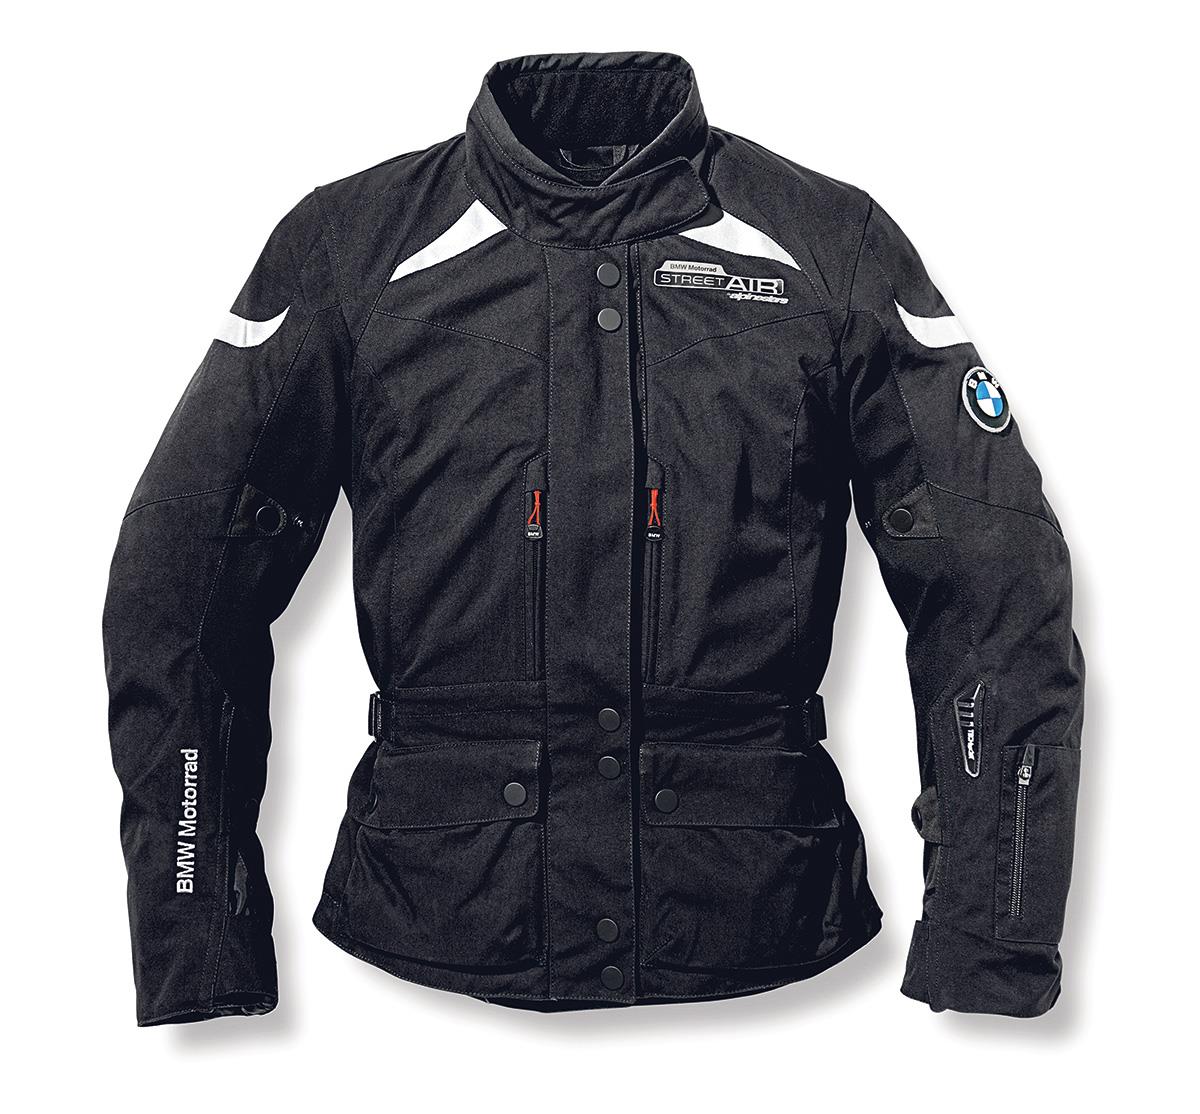 BMW Motorrad Street Air by Alpinestars jacket, £1600 | MCN